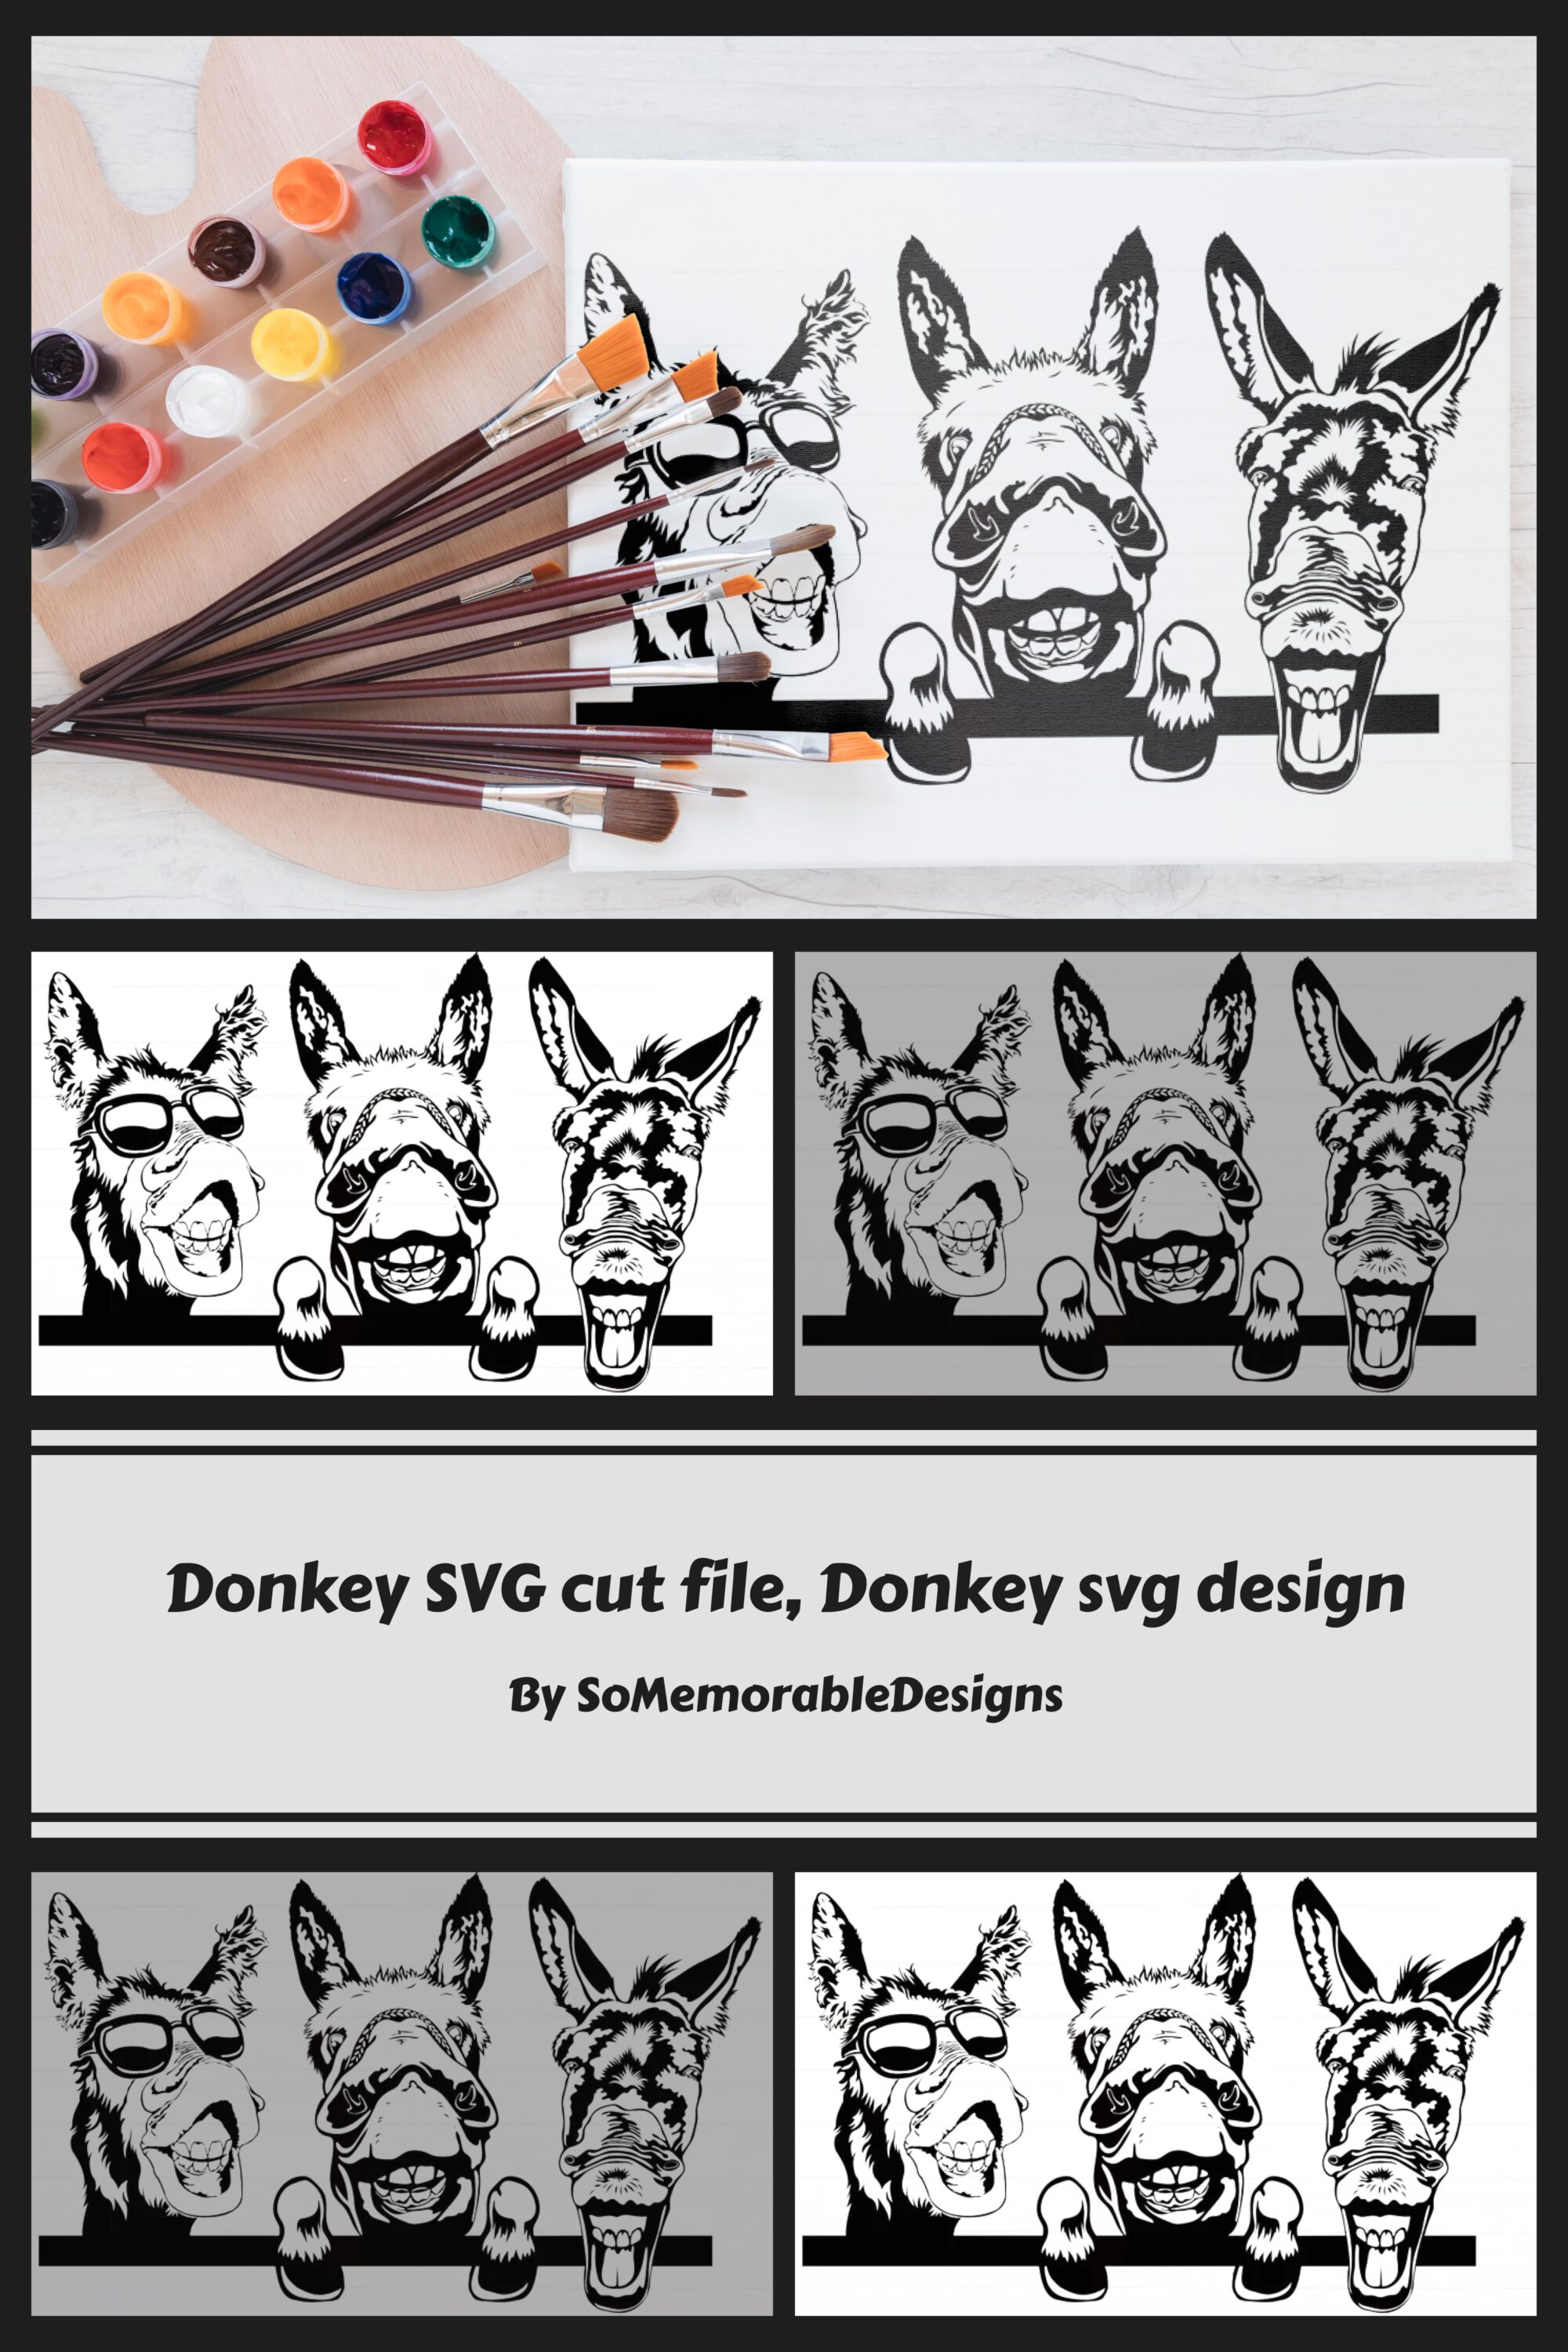 donkey svg cut file donkey svg design 03 573